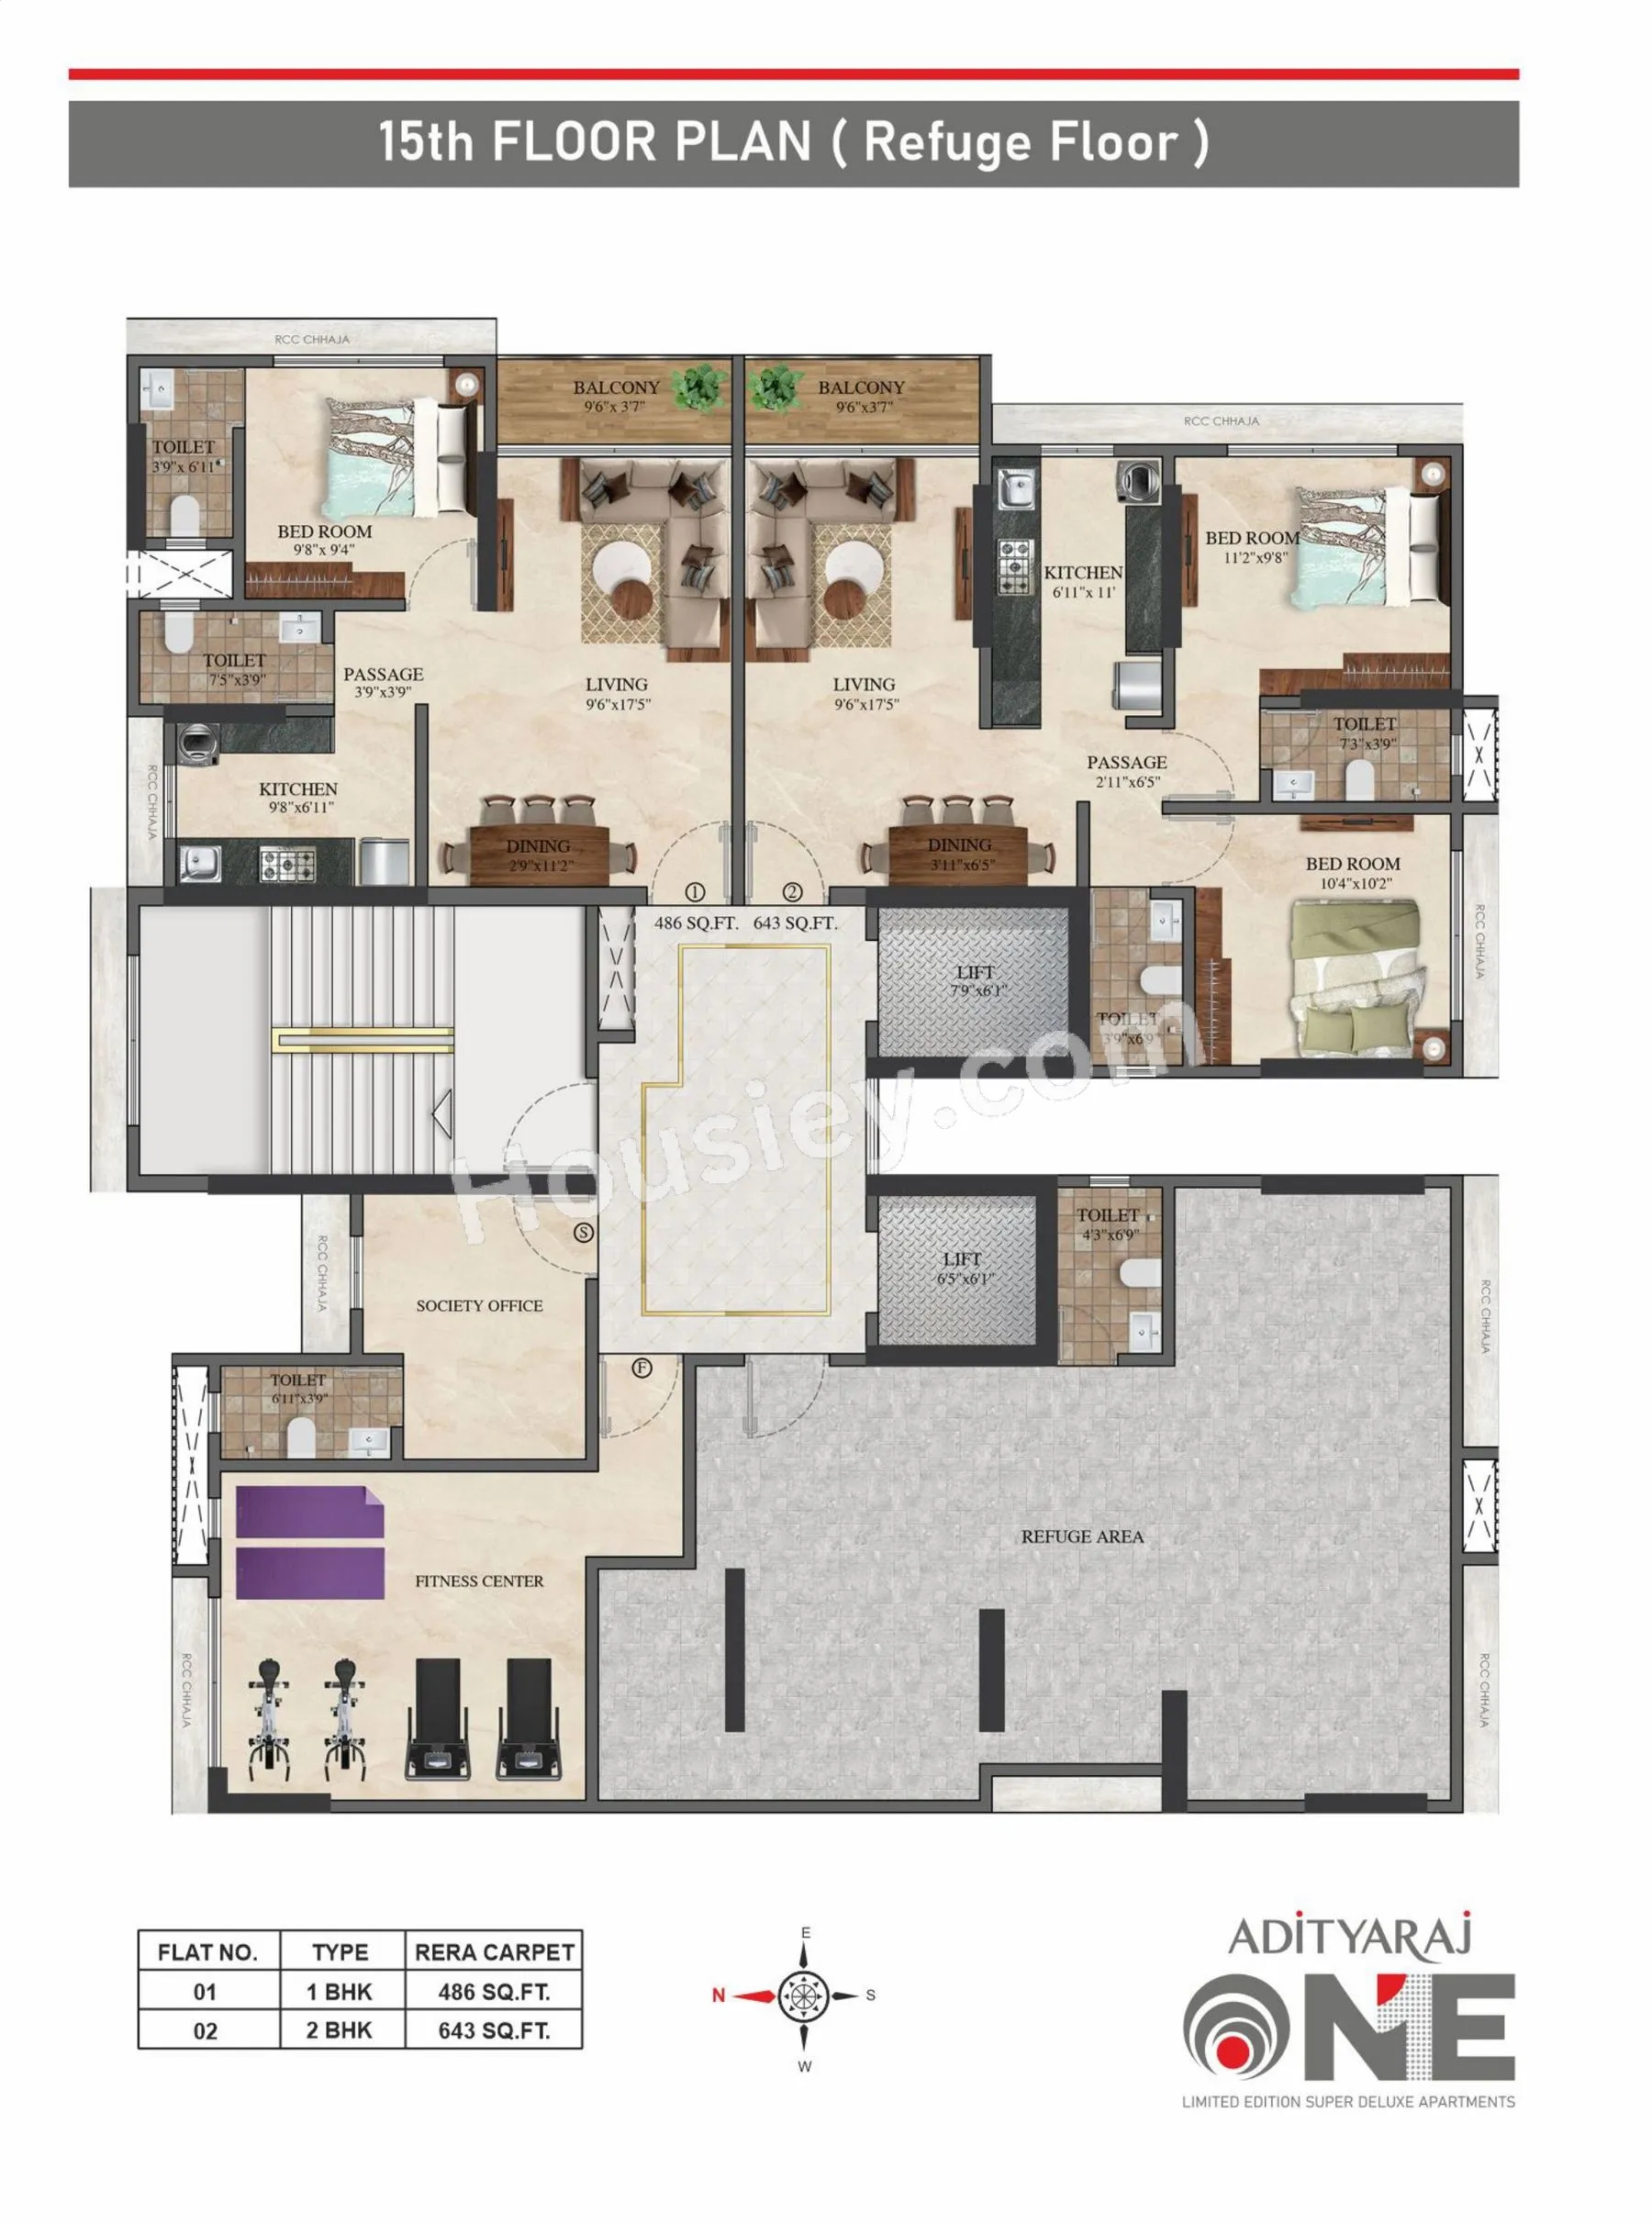 Floor Plan 2